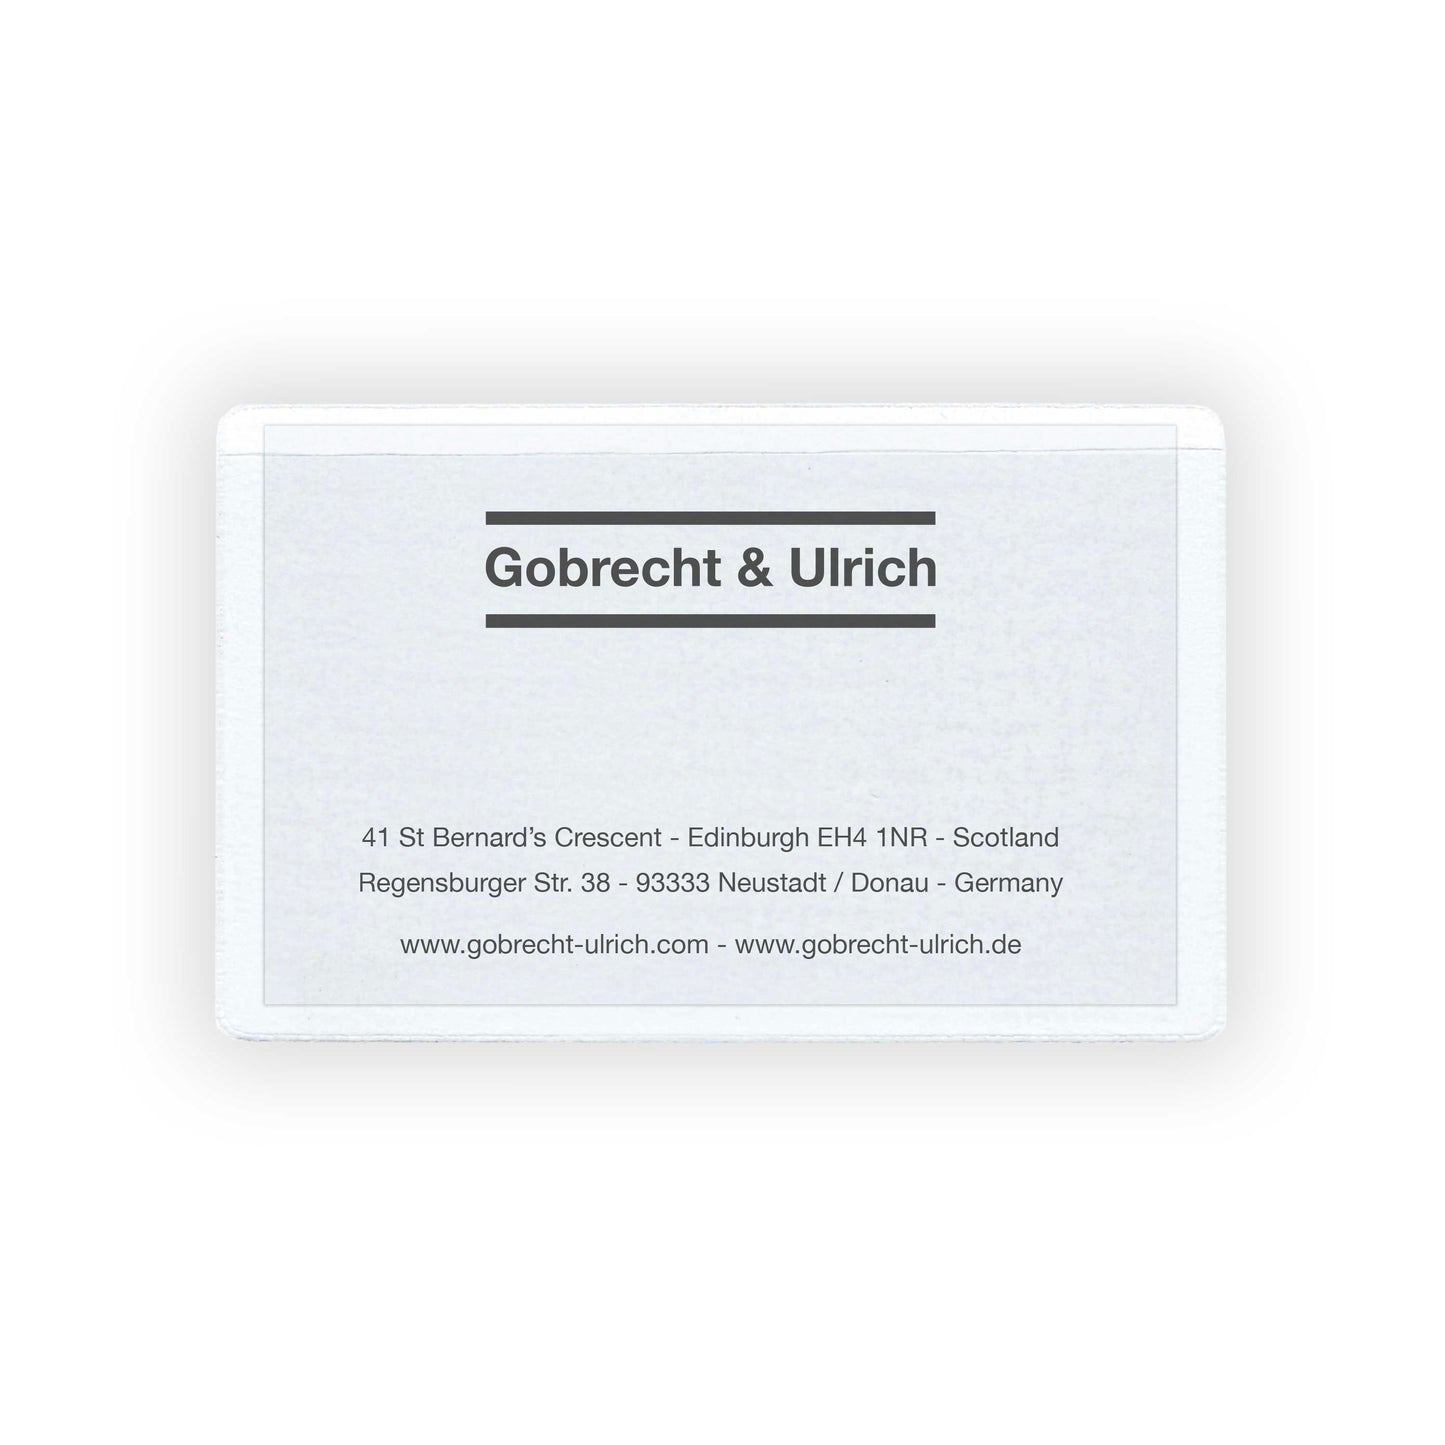 Selbstklebende Visitenkartentasche mit Visitenkarte von Gobrecht & Ulrich